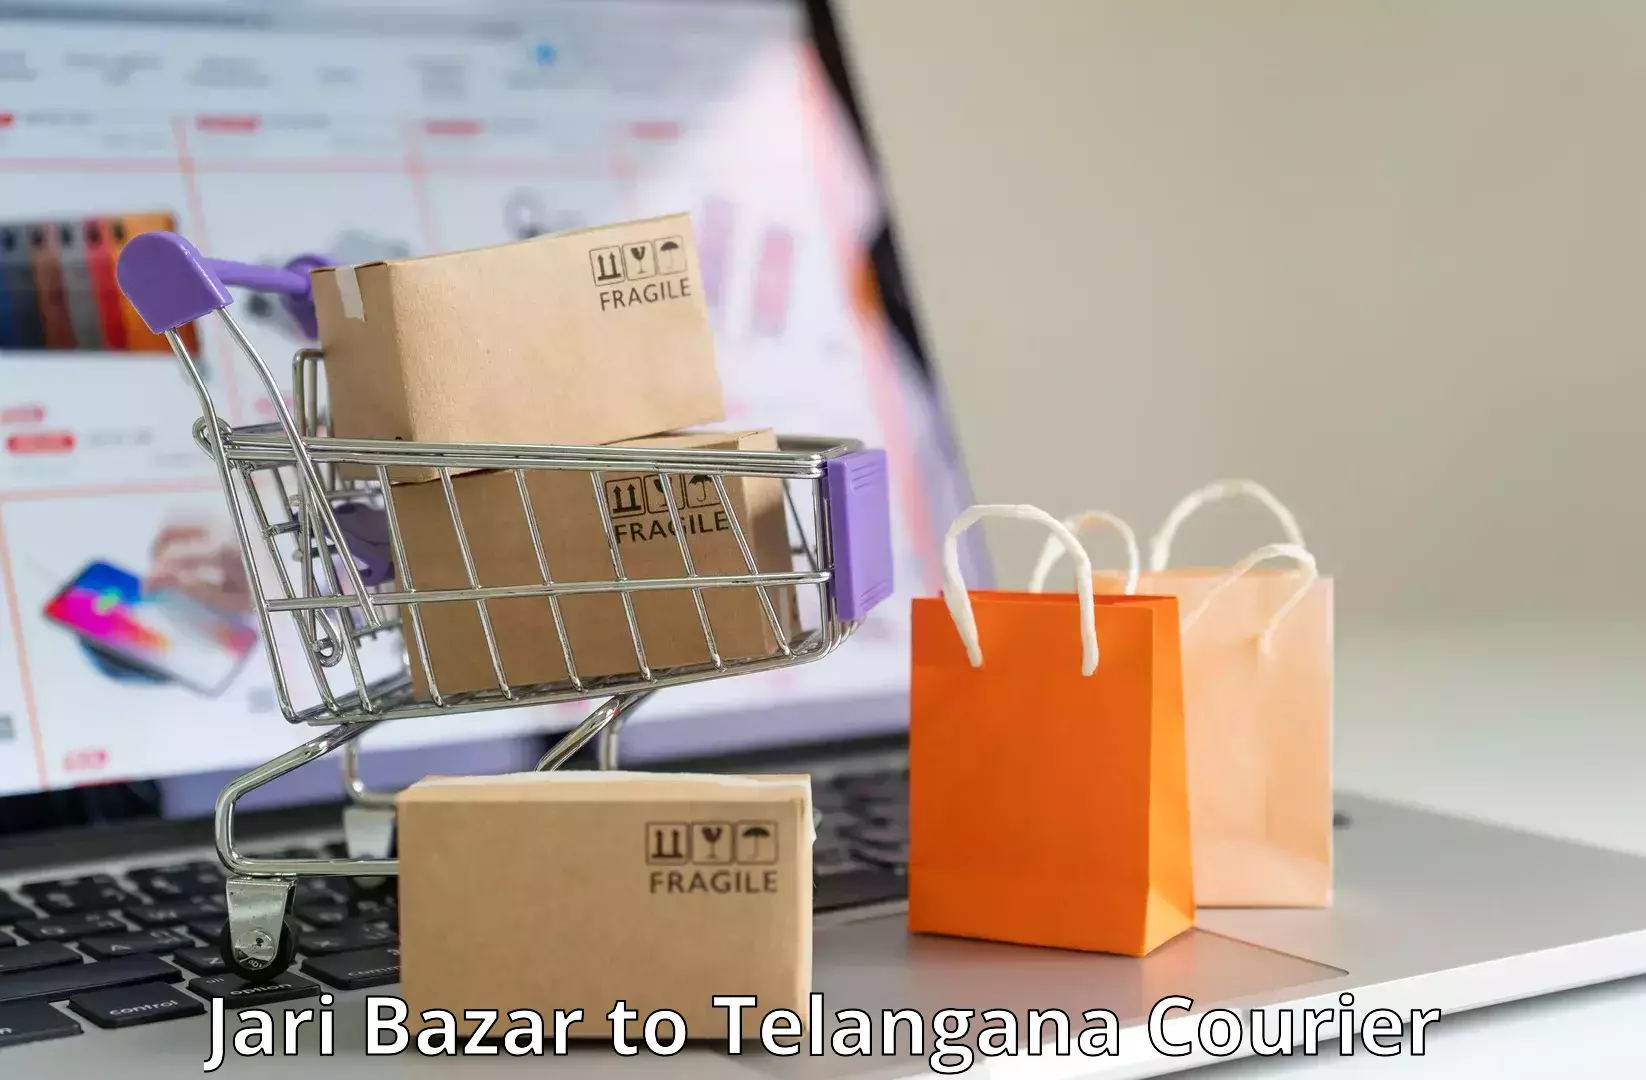 Business shipping needs Jari Bazar to Telangana